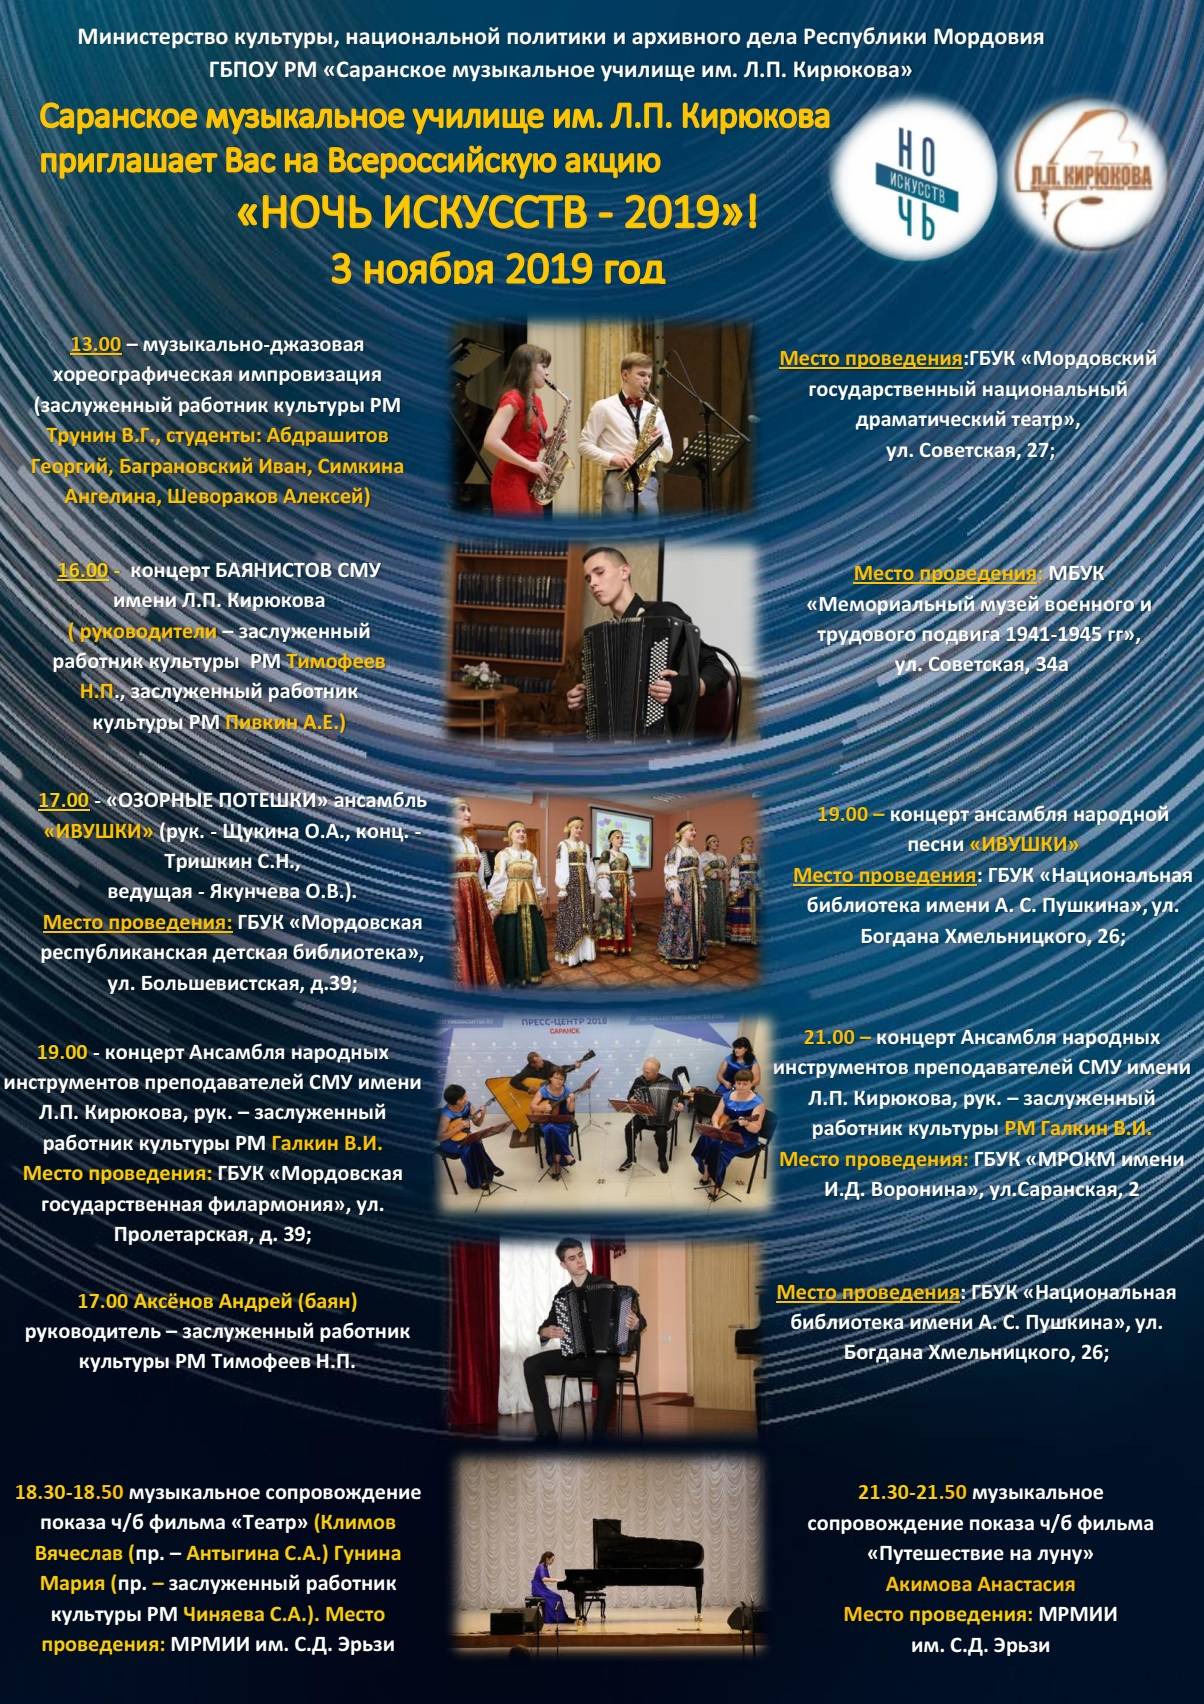 Саранское музыкальное училище им. Л.П. Кирюкова приглашает Вас на Всероссийскую акцию «НОЧЬ ИСКУССТВ - 2019»!